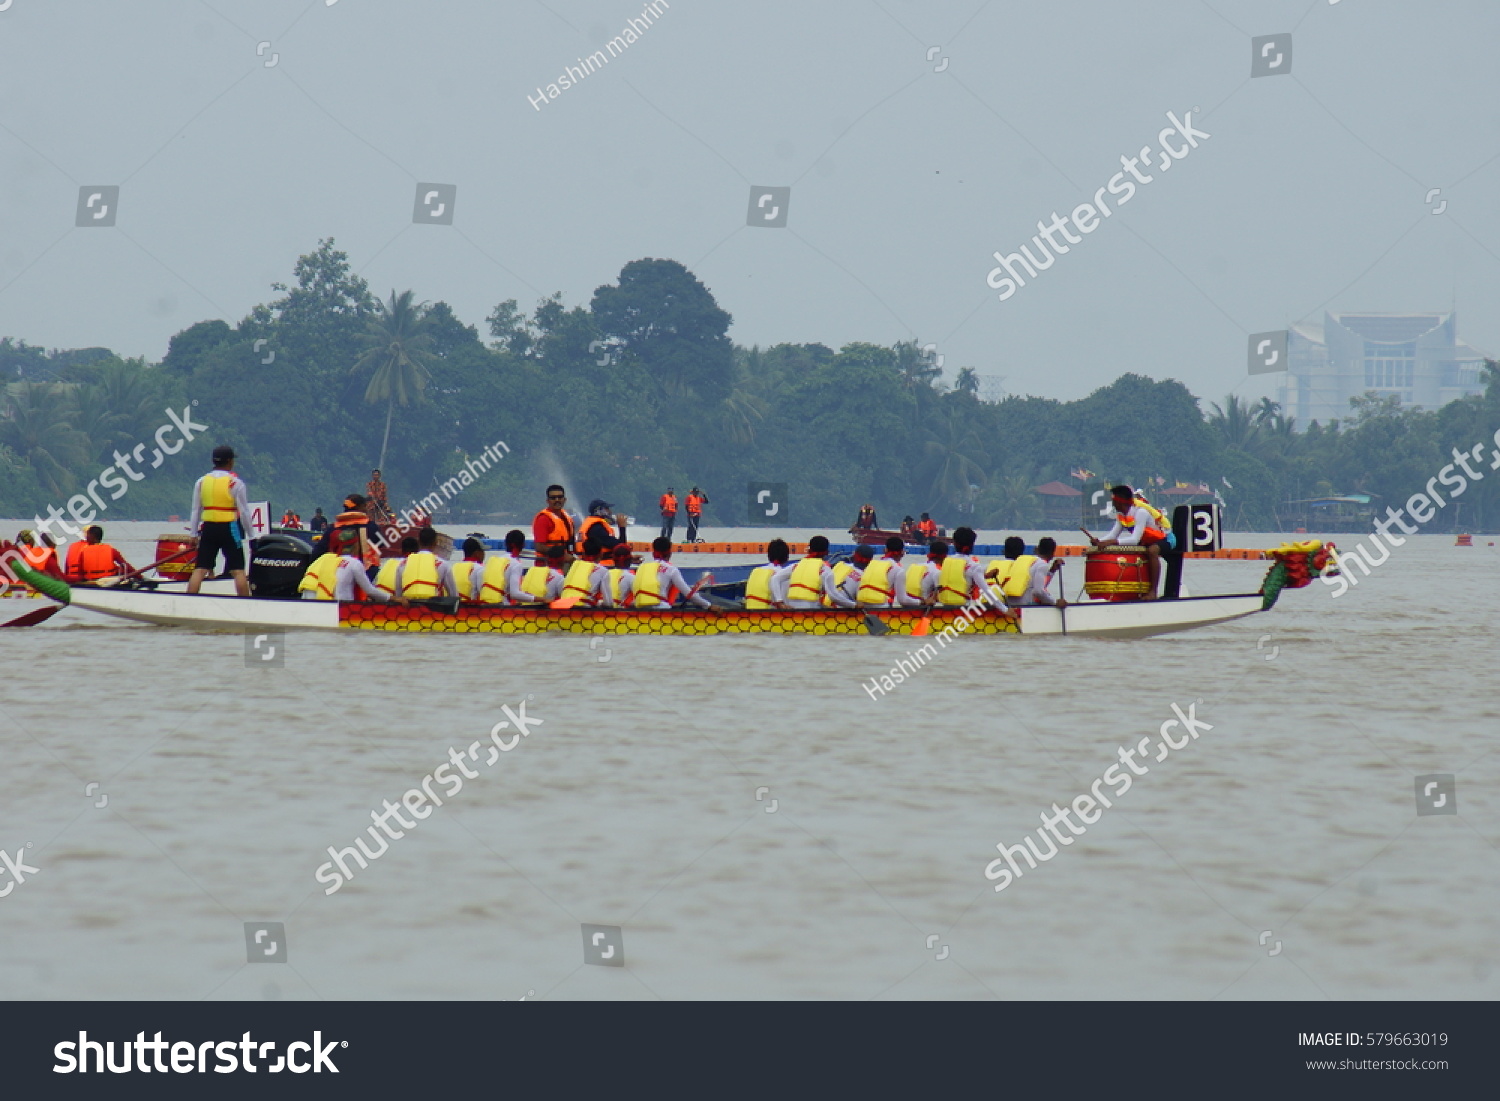 Sarawak regatta History of